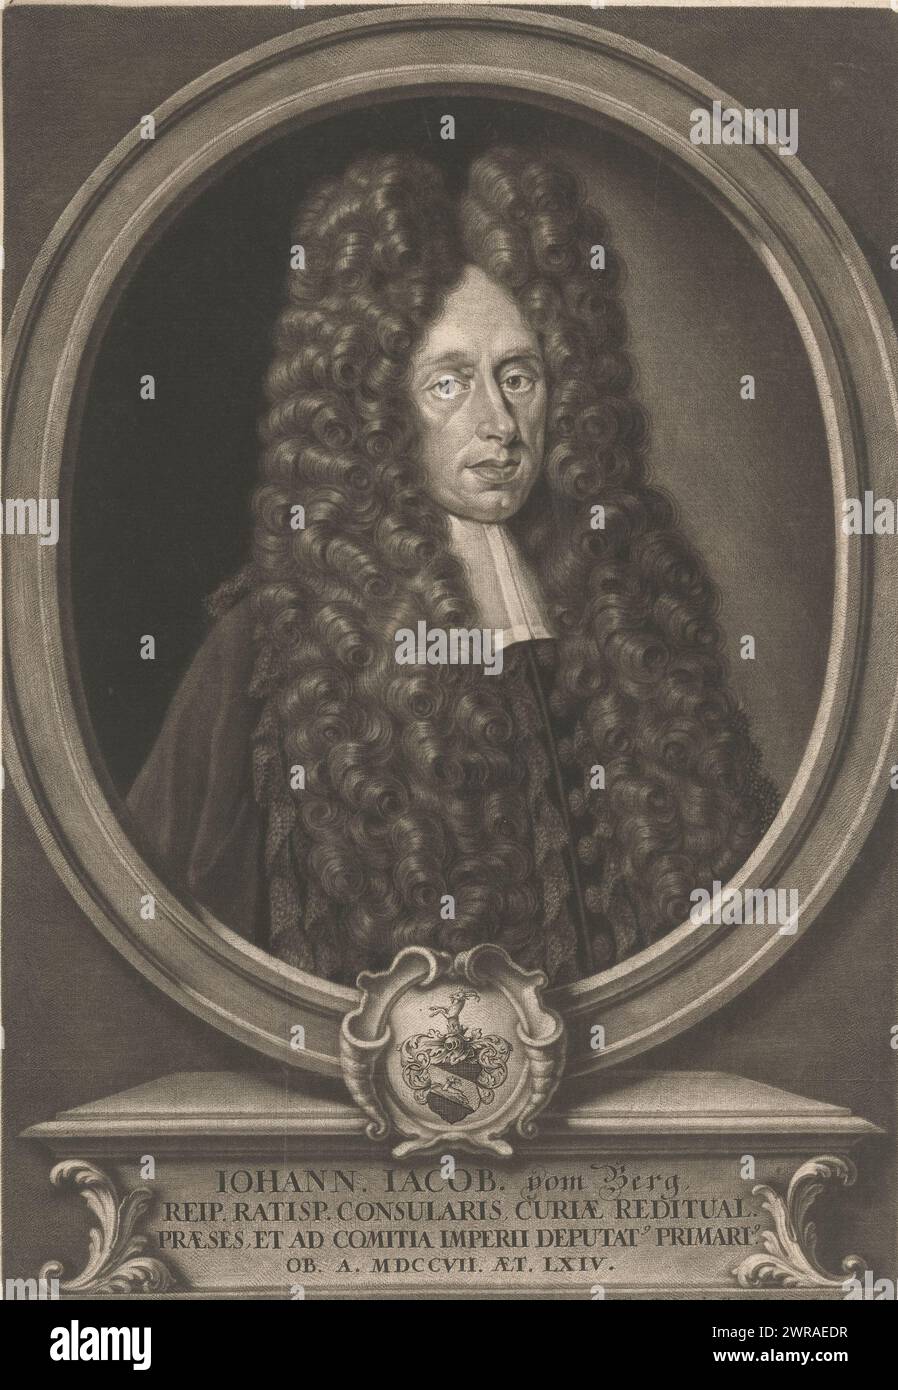 Ritratto di Johann Jacob vom Berg all'età di 64 anni, stampatore: Elias Christopf Heiss, Augusta, 1707 - 1708, carta, altezza 320 mm x larghezza 218 mm, stampa Foto Stock